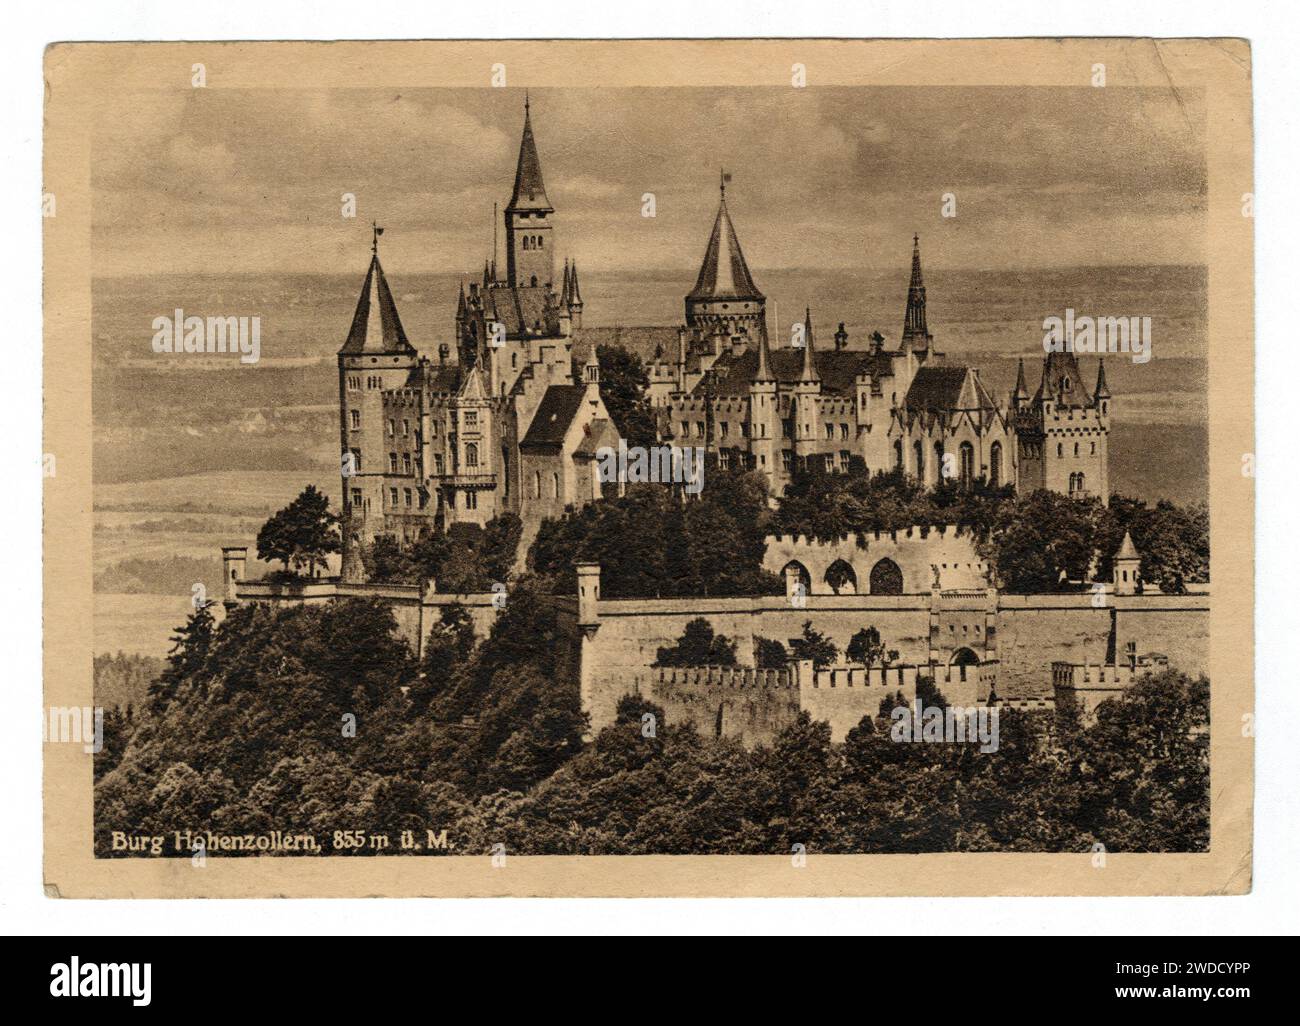 Carte postale sépia des années 1940 du château de Hohenzollern près de Hechingen, Allemagne. Banque D'Images